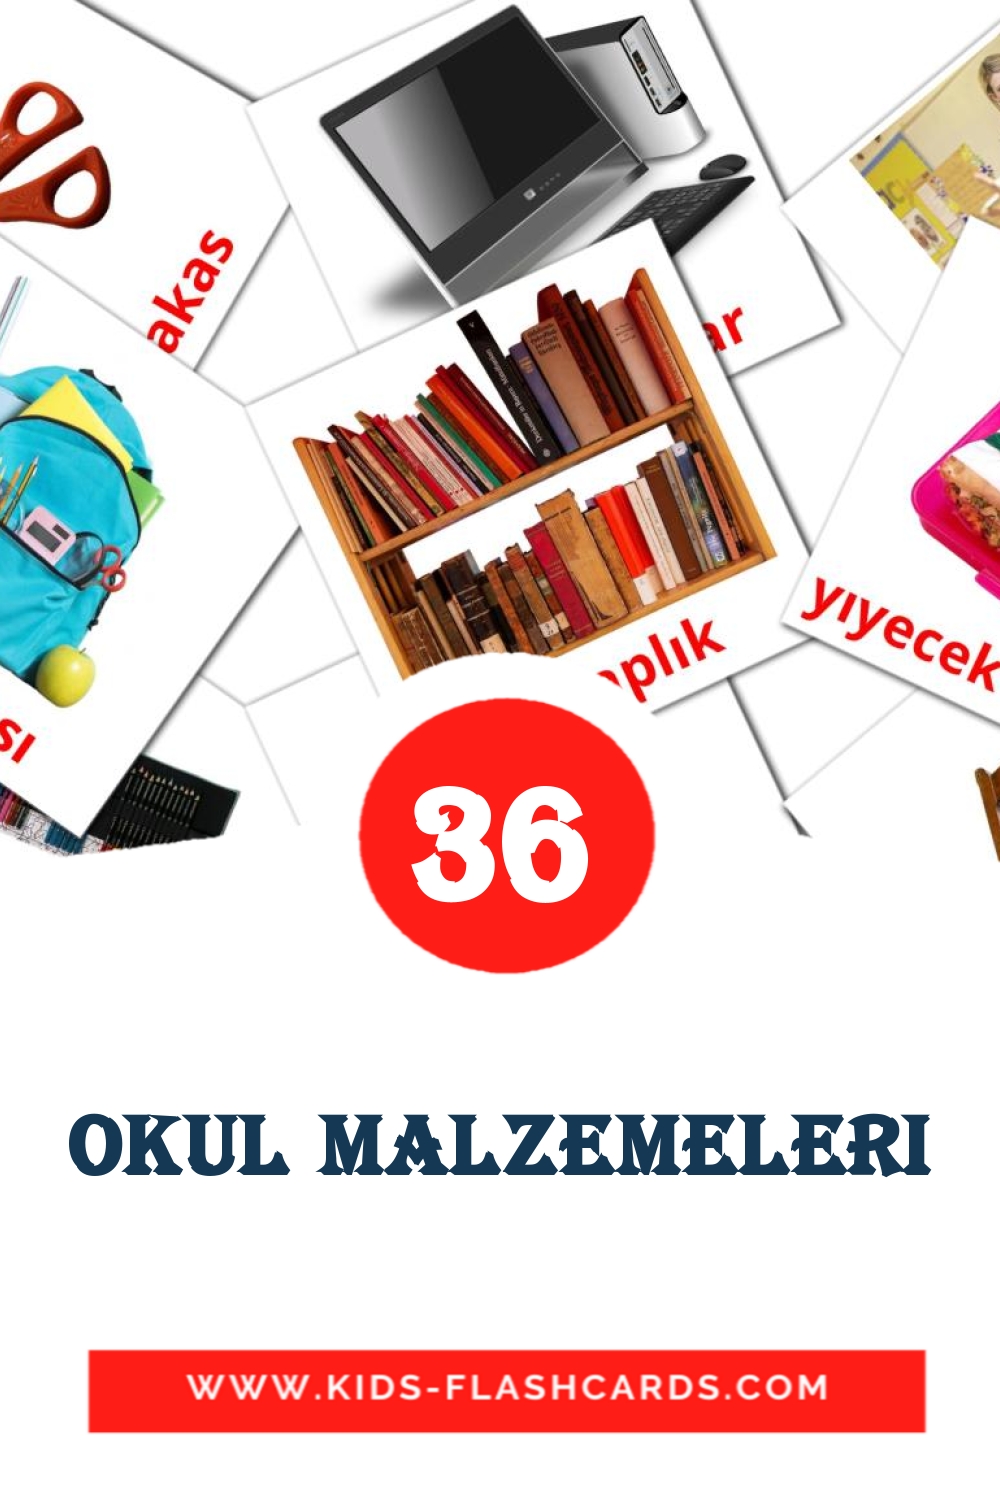 36 Cartões com Imagens de Okul malzemeleri para Jardim de Infância em turco